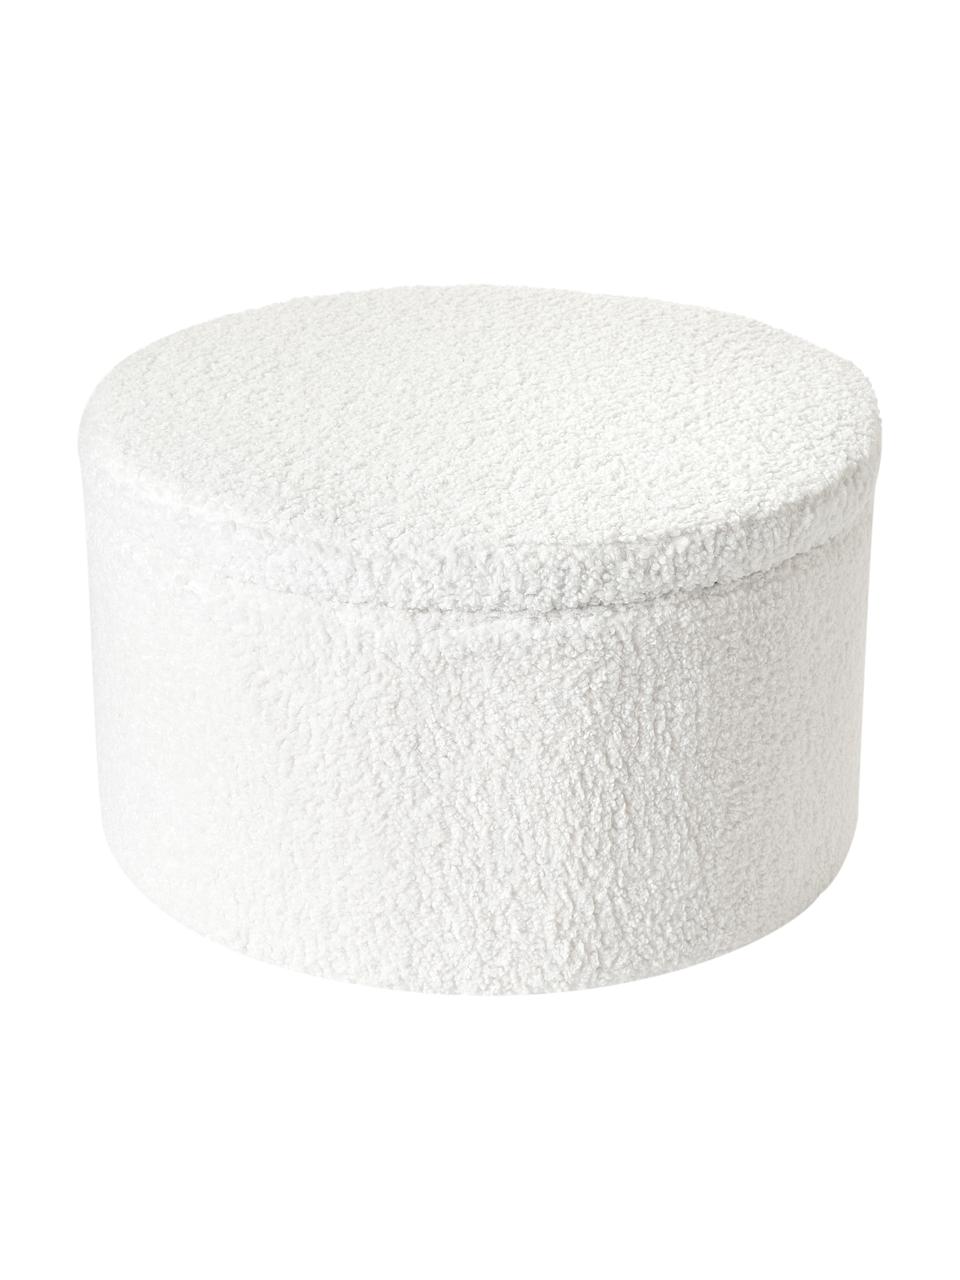 XL teddy kruk Alida in wit met opbergruimte, Bekleding: 100% polyester (teddyvach, Teddy wit, Ø 70 x H 42 cm